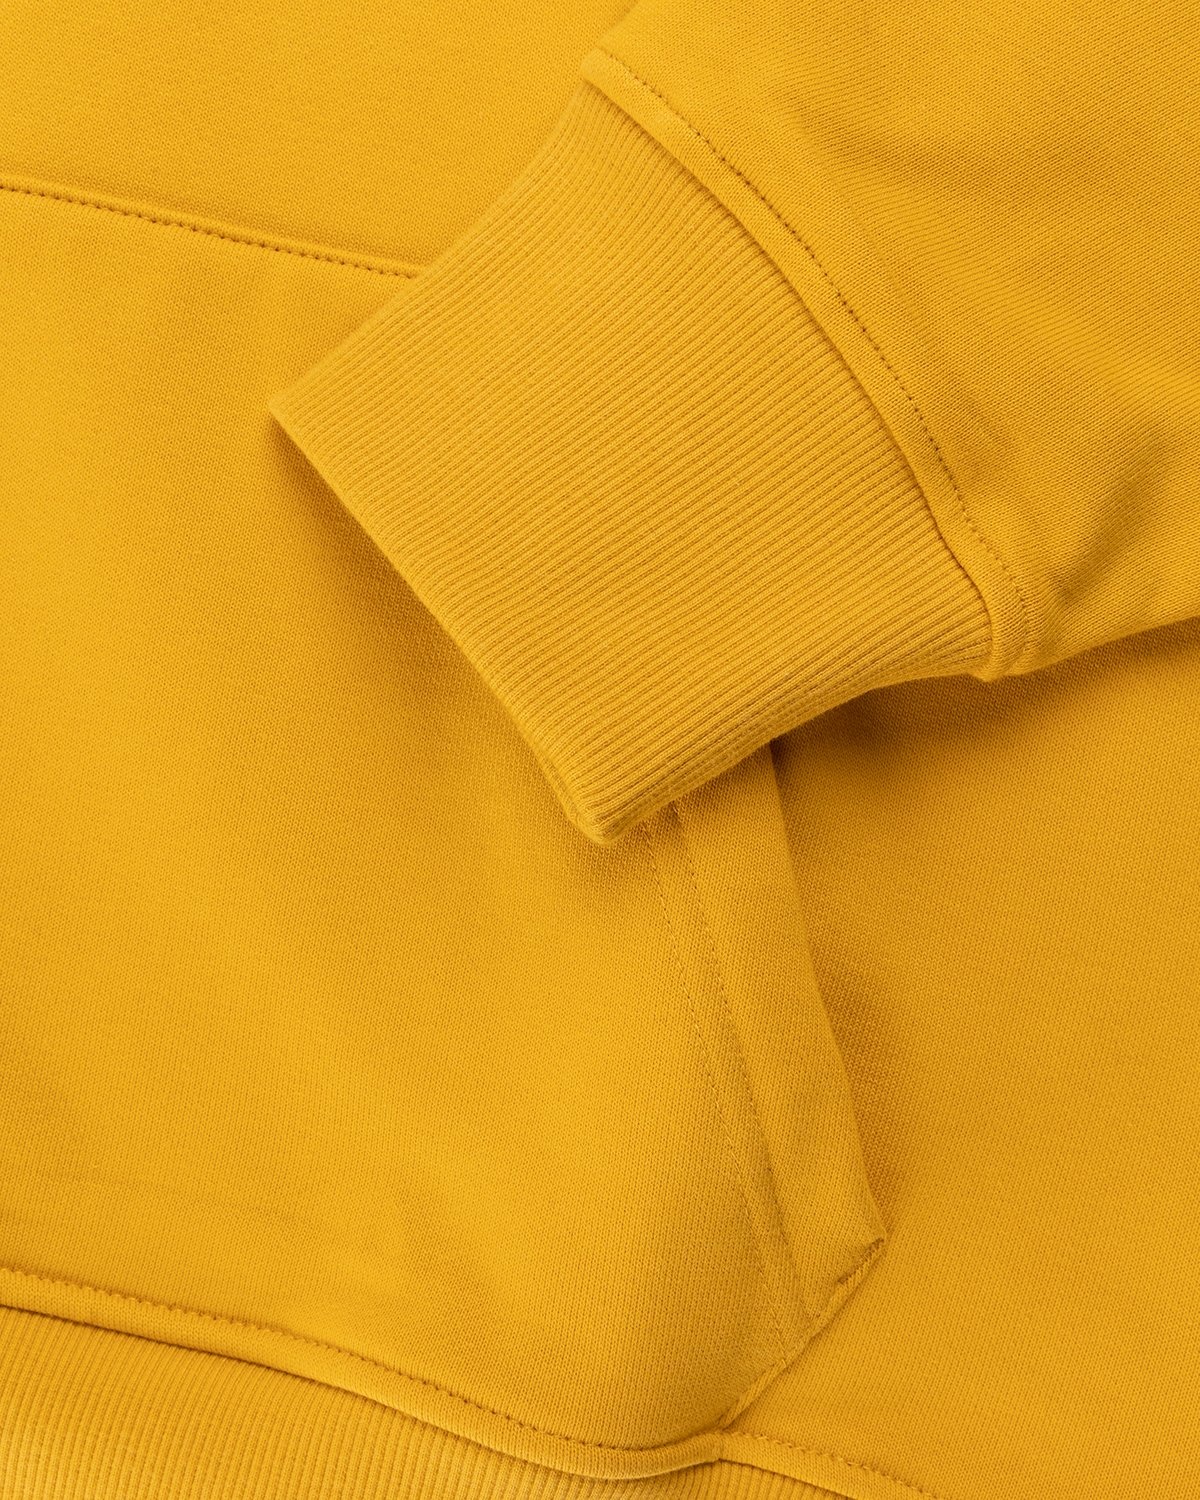 New Balance – Conversations Amongst Us Hoodie Aspen Yellow - Sweats - Yellow - Image 5